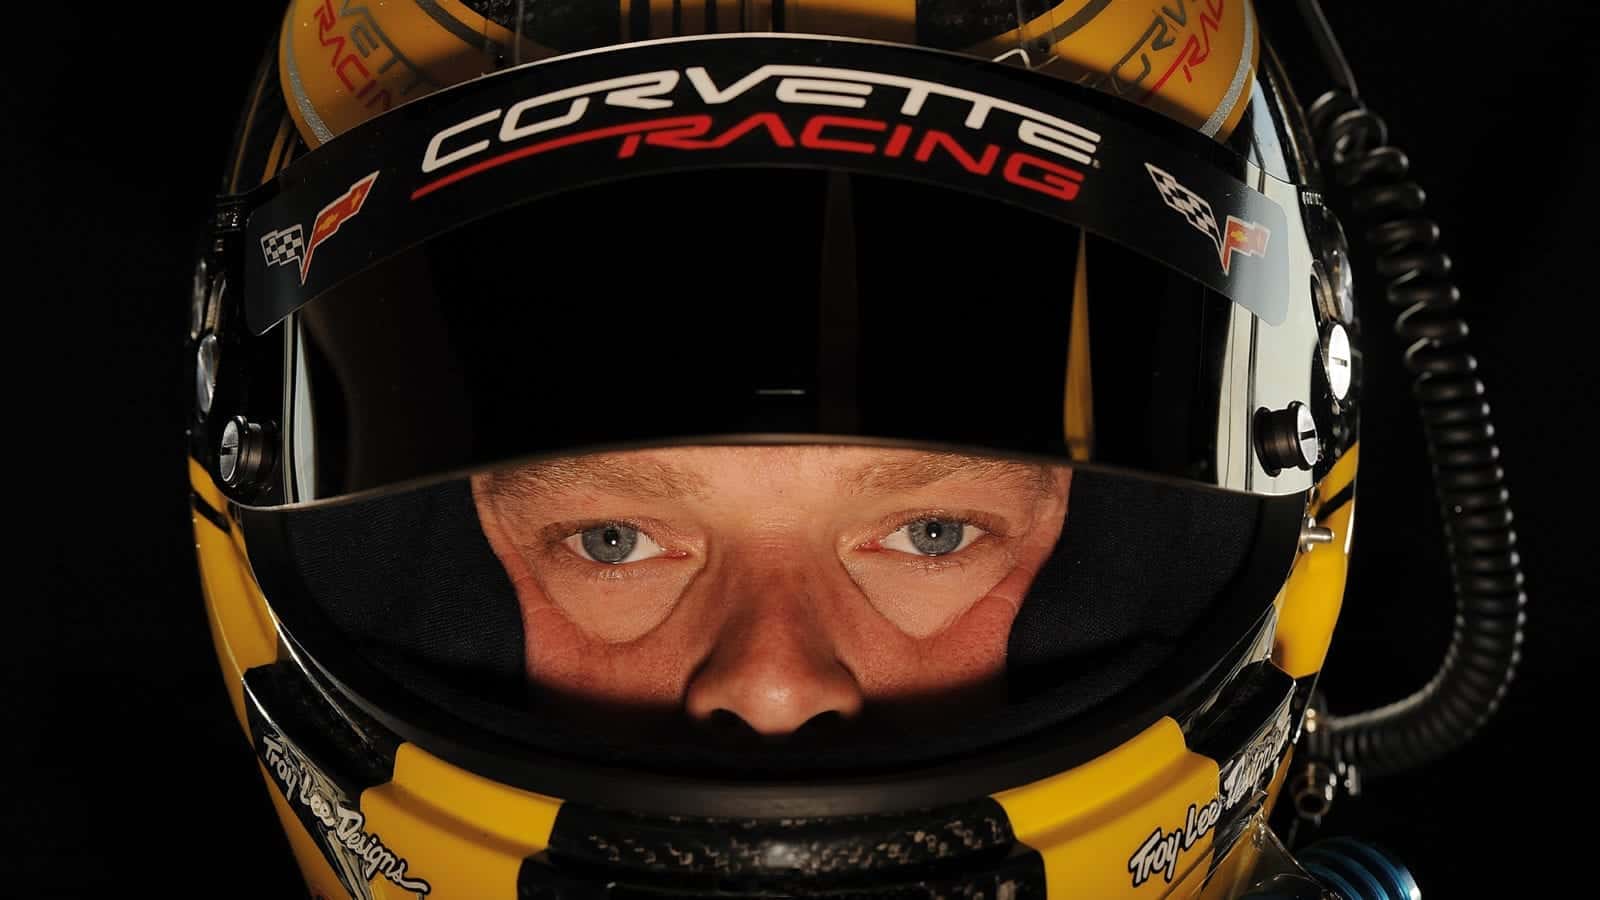 Eyes of Jan Magnussen inside his crash helmet